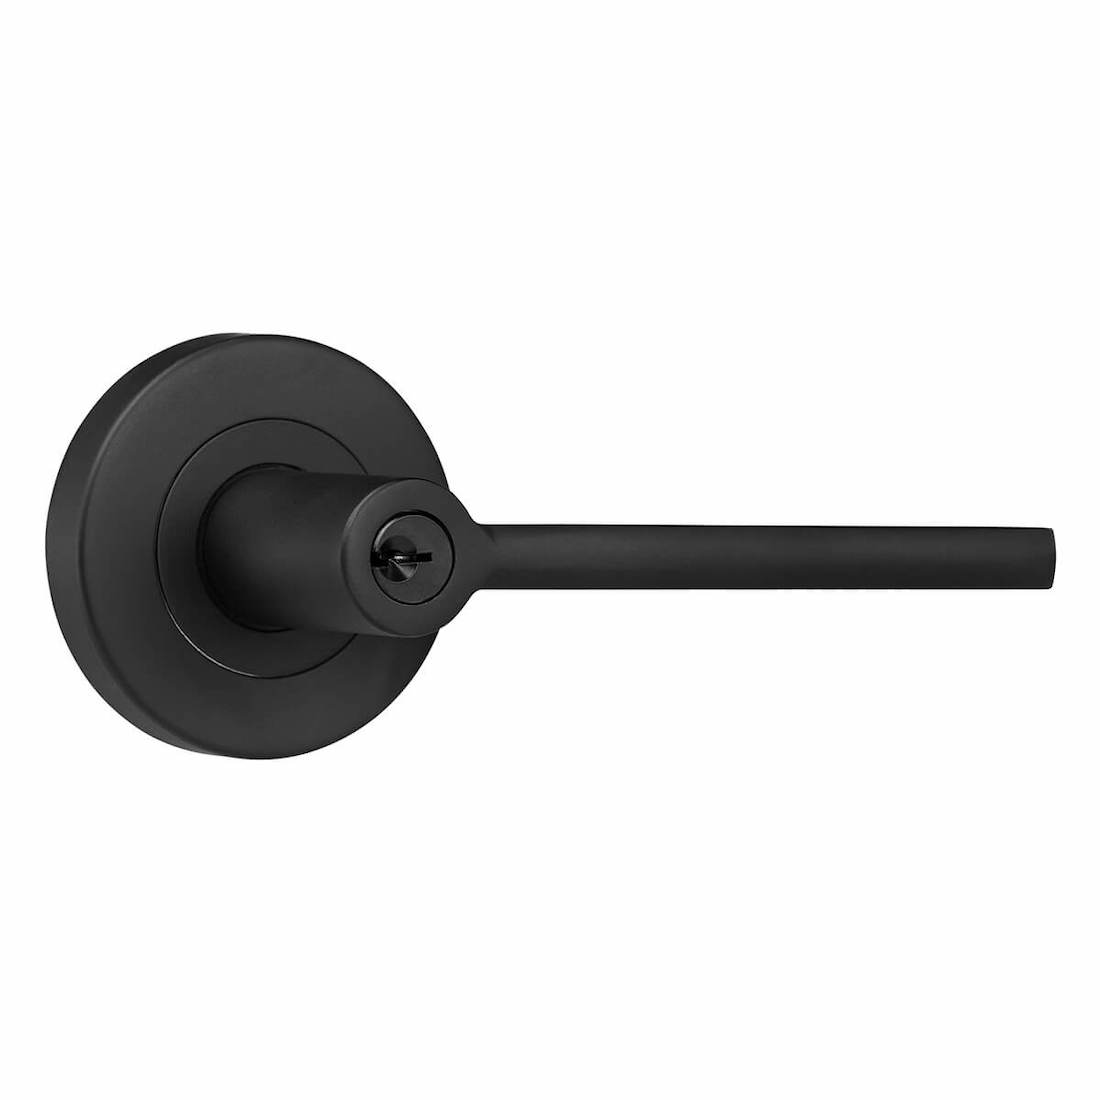 Black entrance door handle